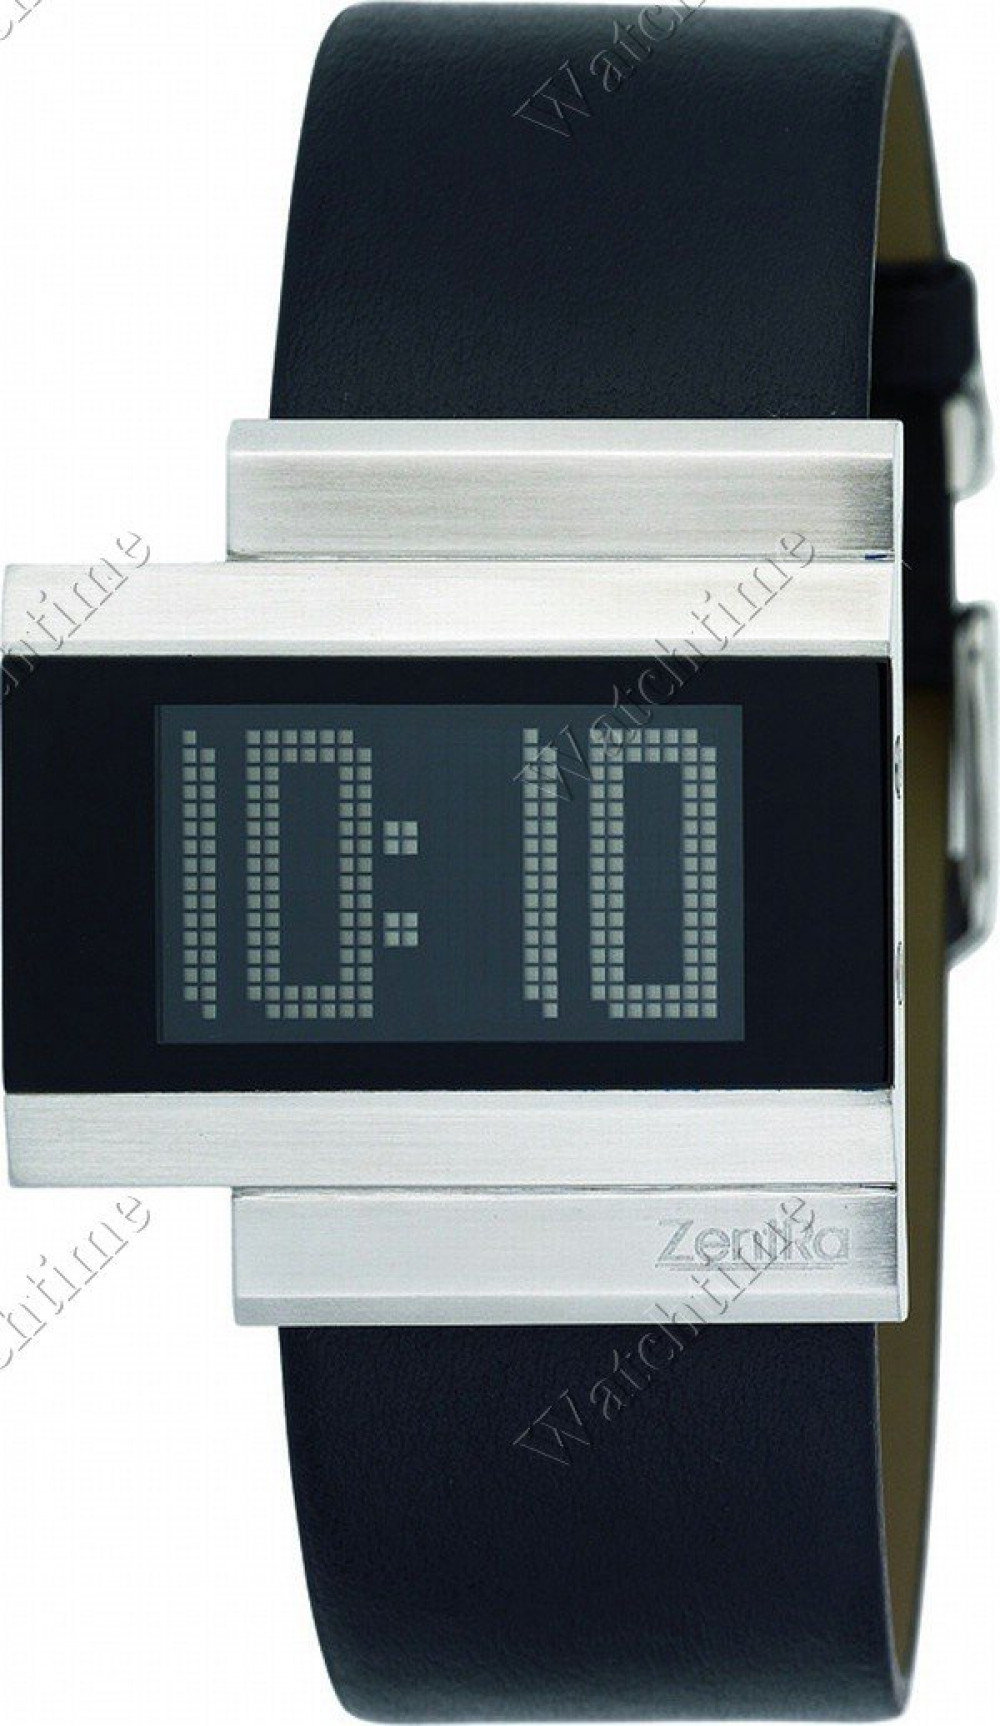 Zegarek firmy ZentRa, model Z27001-01